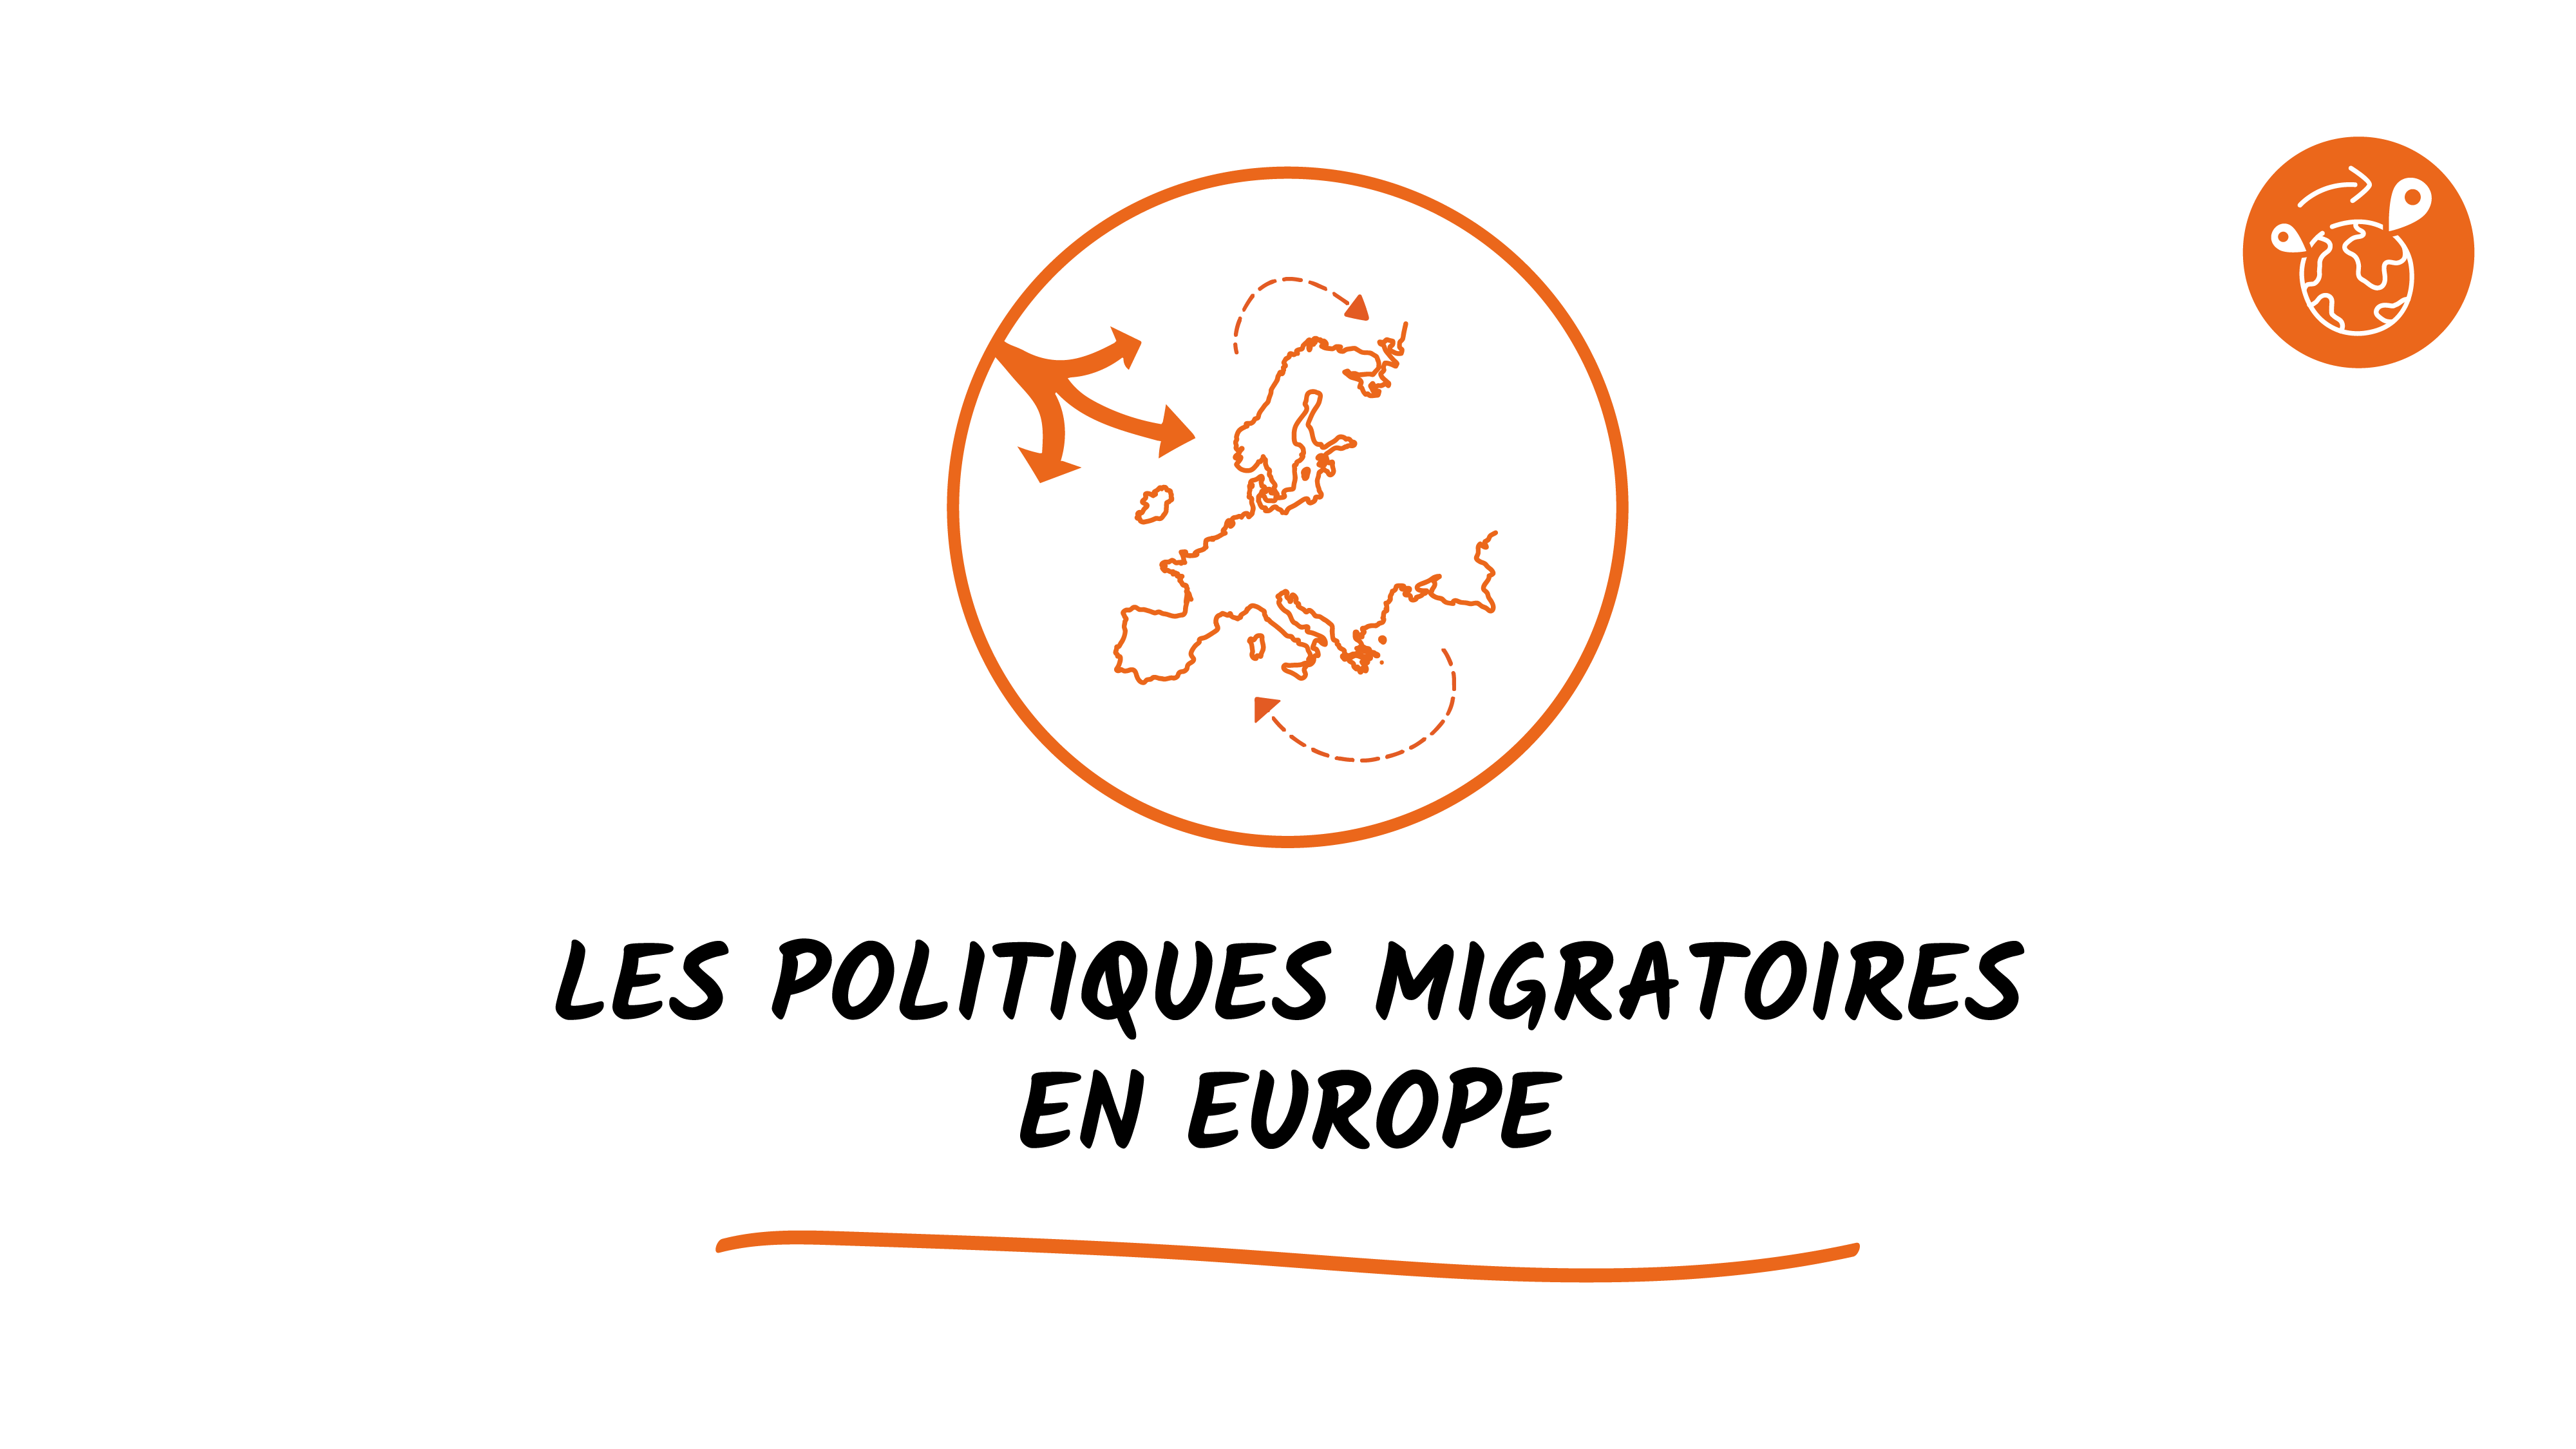 Les politiques migratoires en Europe